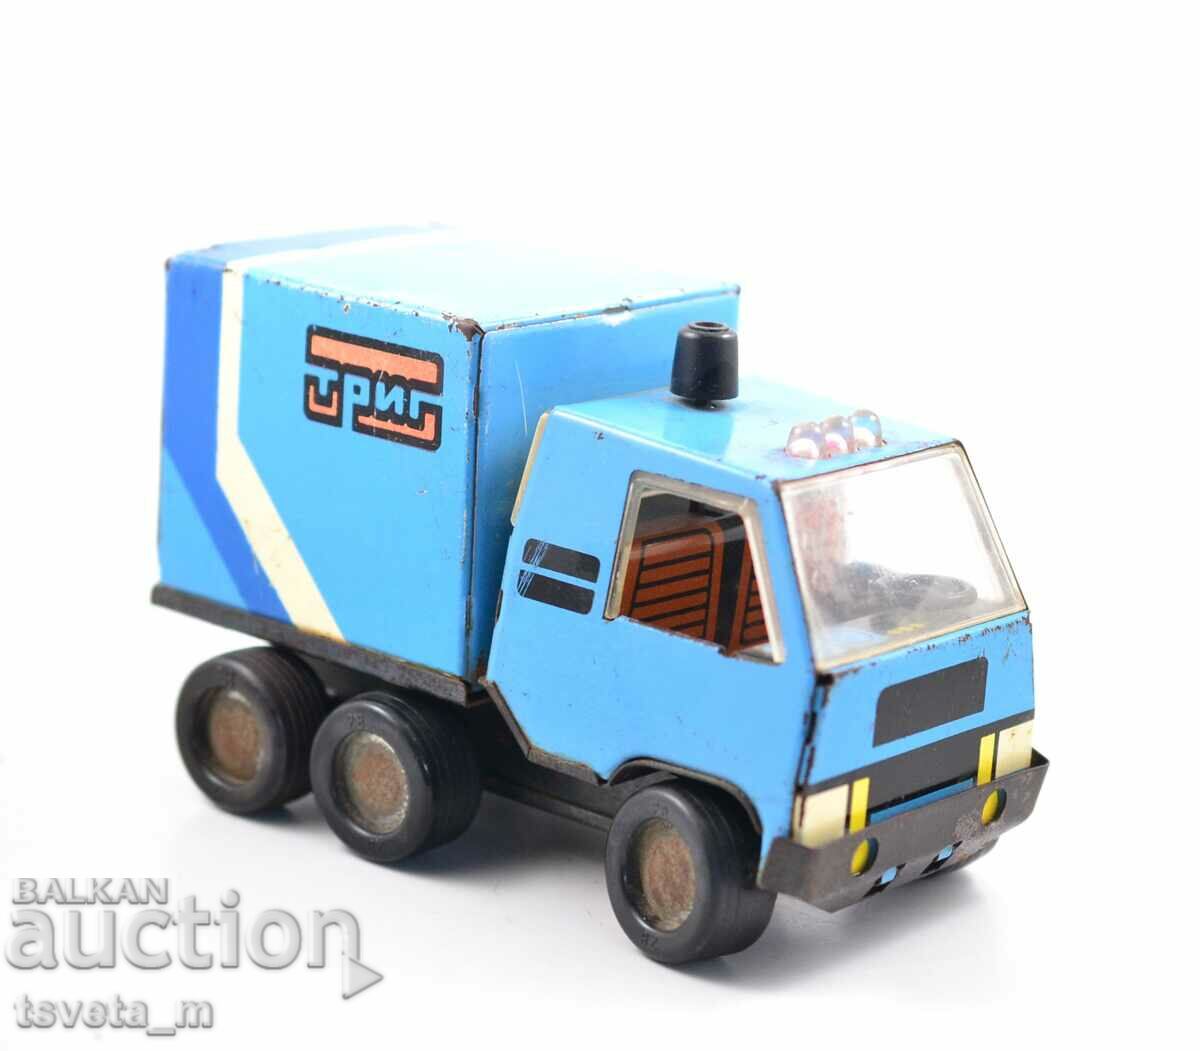 Μεταλλικό παιδικό φορτηγό παιχνίδι - κοινωνικό